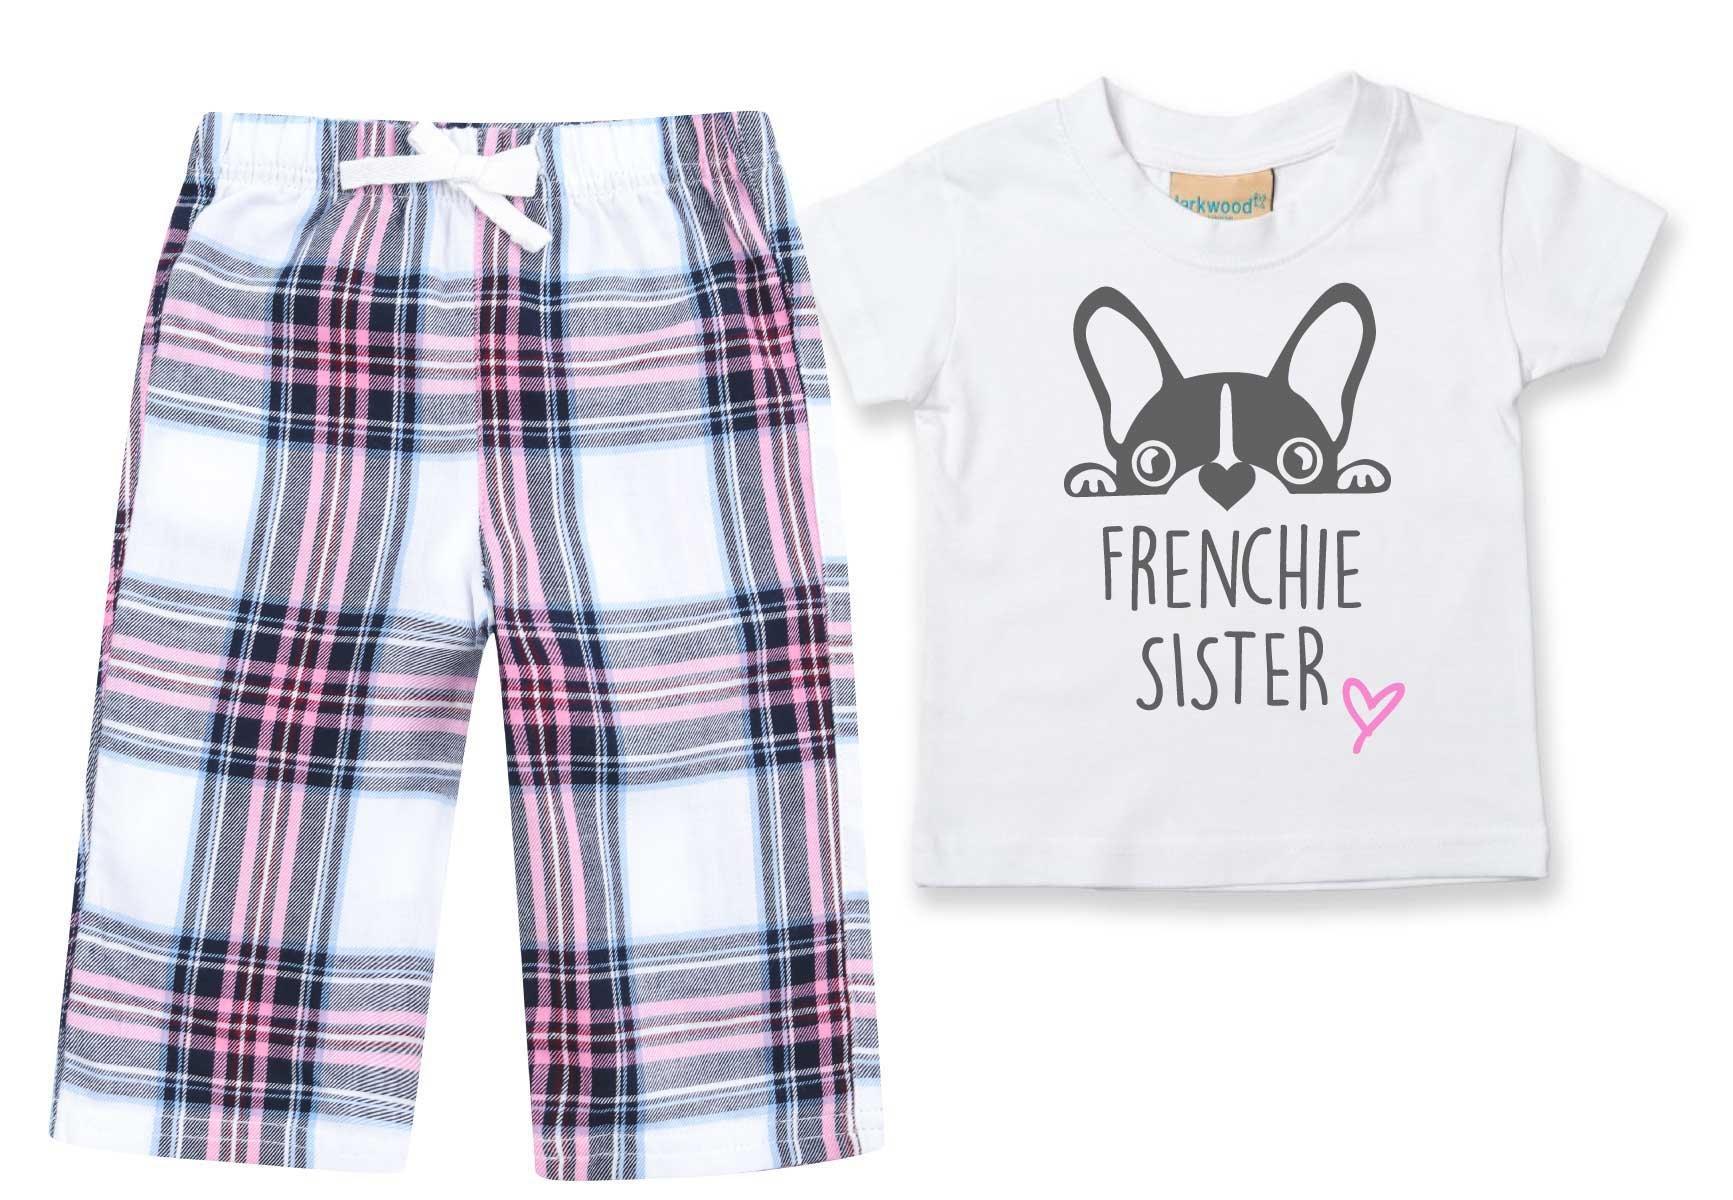 Пижамы Frenchie Sister, детские брюки в клетку, пижамный комплект с французским бульдогом 60 SECOND MAKEOVER, розовый георгина тартан бордюрная